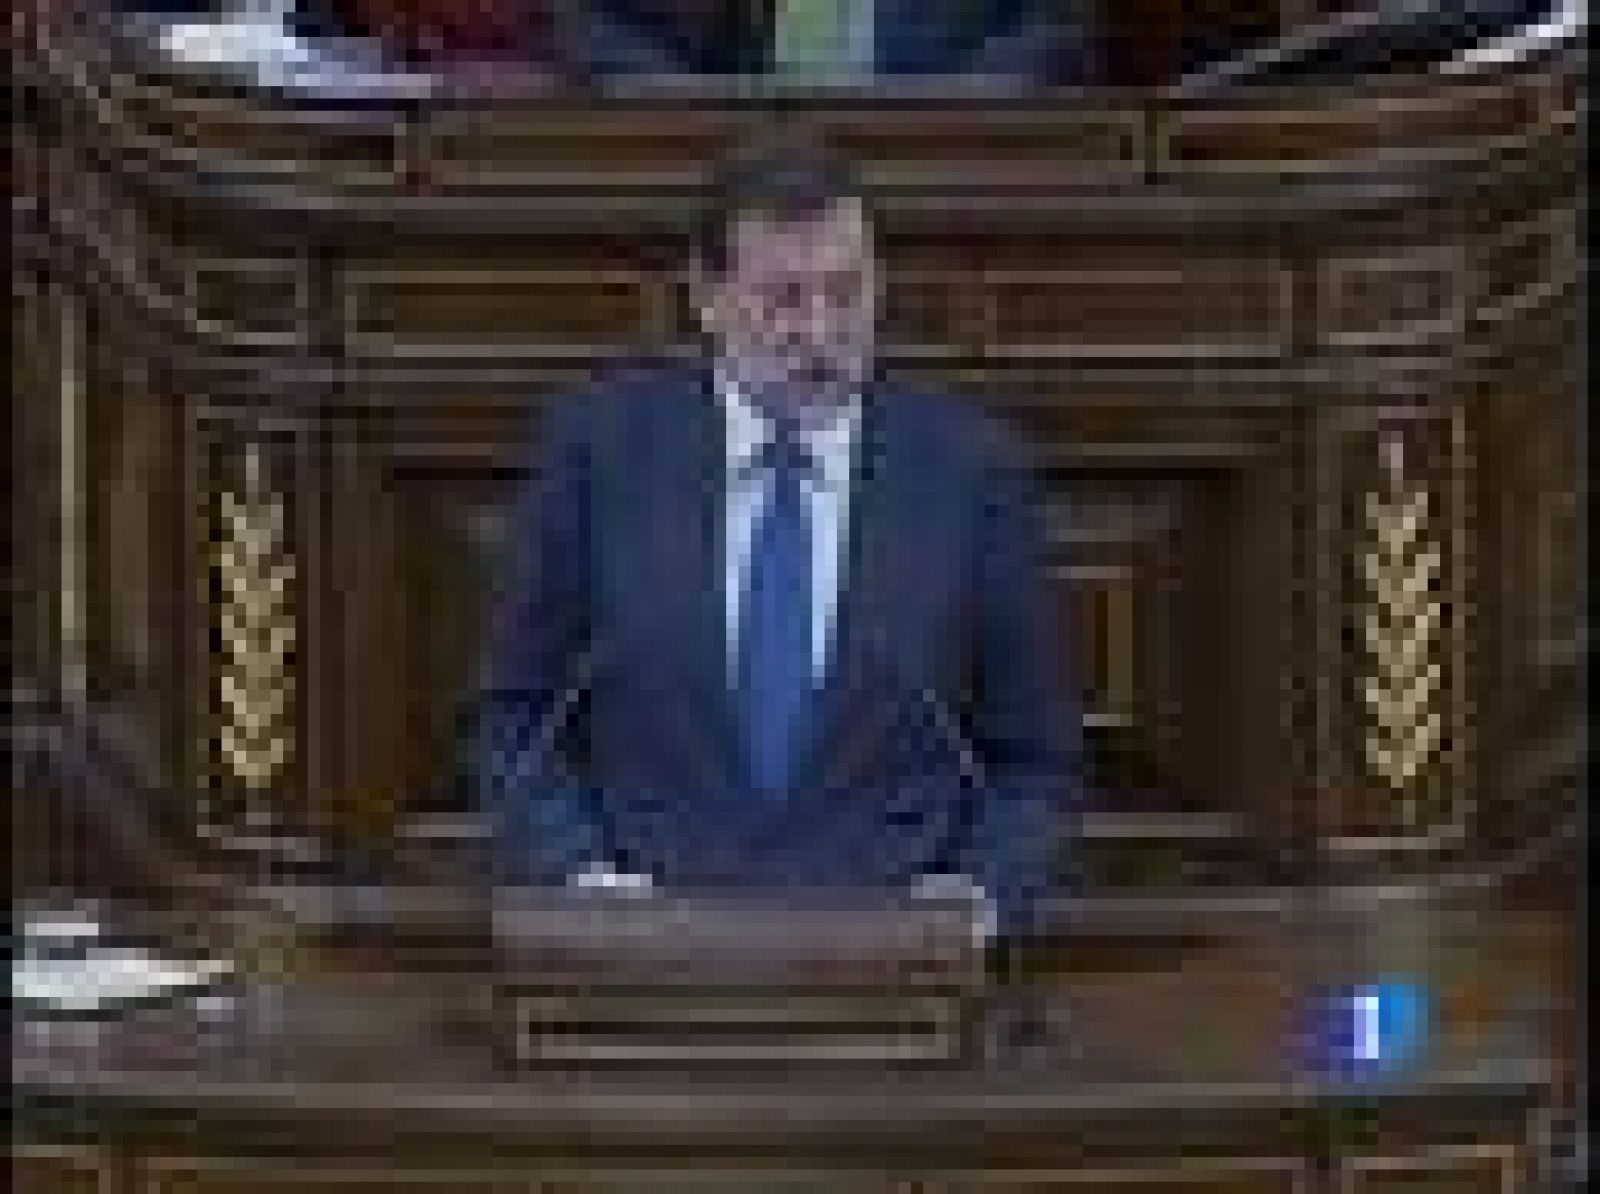 Cinco horas ha durado el debate sobre la crisis economica en el Congreso, y en el cara entre Rodríguez Zapatero y Mariano Rajoy se han vuelto a intercambiar duras críticas sobre sus respectivas recetas económicas. Tanto, que el debate ha ido más allá de la pura economía.